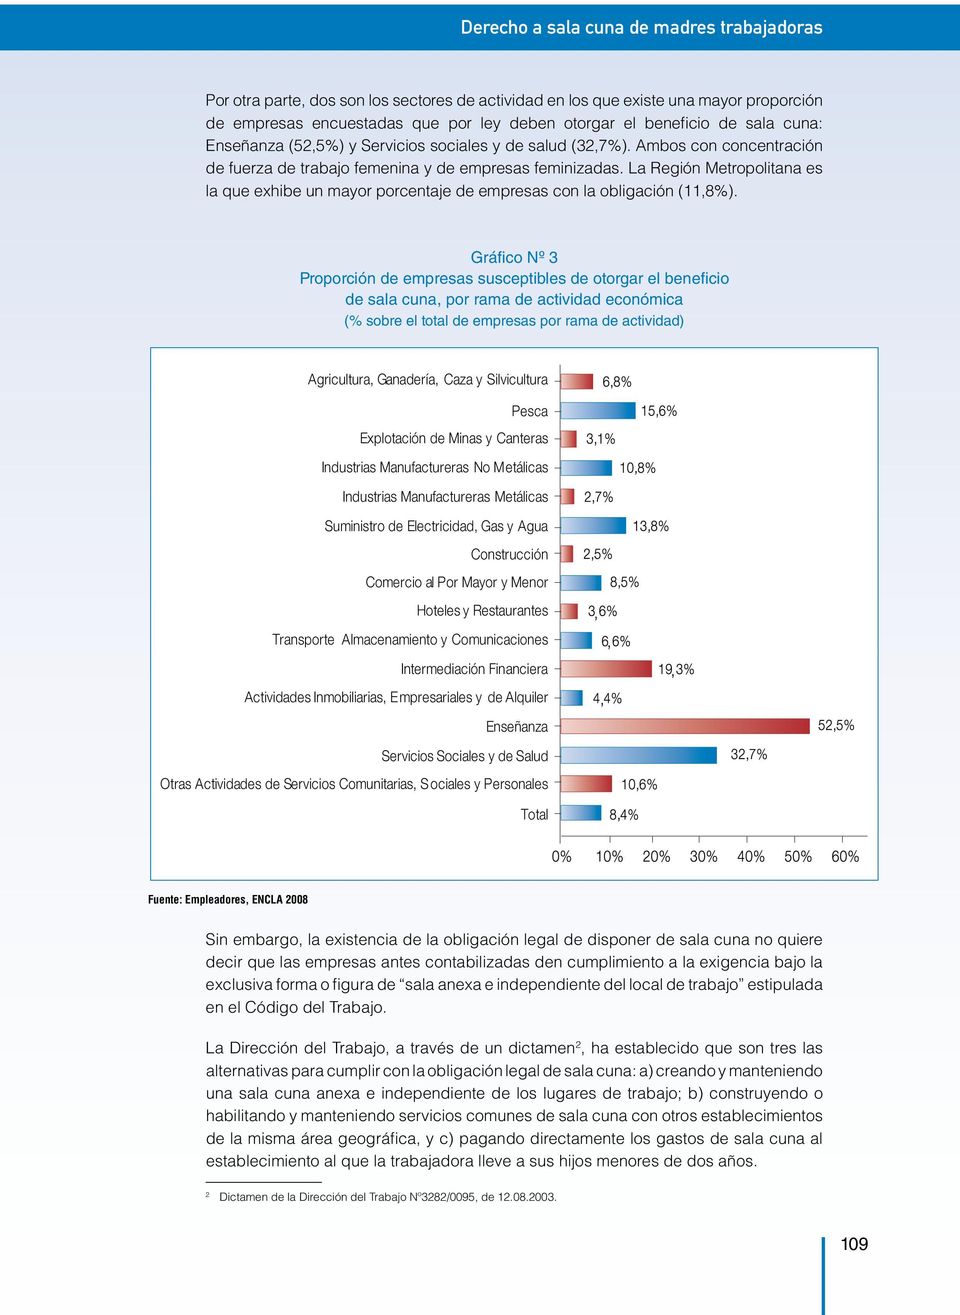 La Región Metropolitana es la que exhibe un mayor porcentaje de empresas con la obligación (11,8%).